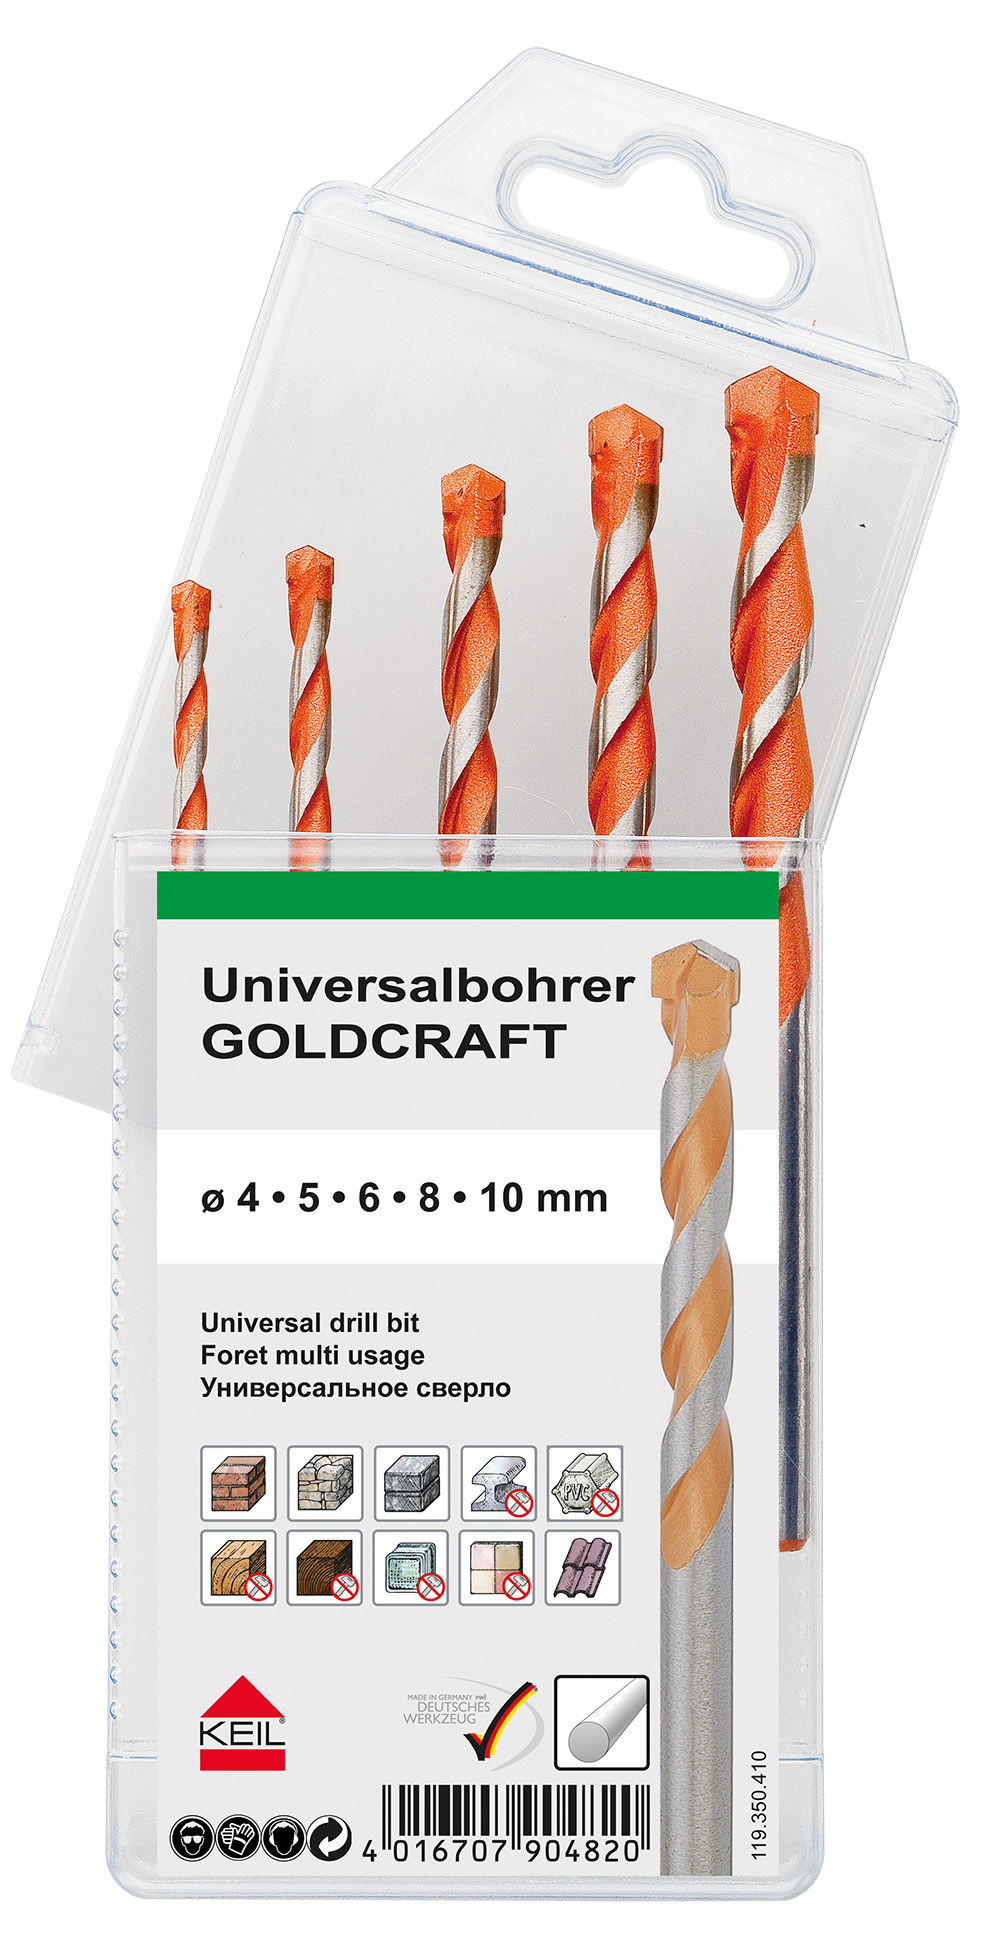 Keil Universalbohrer, Schlagbohrer Goldcraft MultiPack 5-teilig